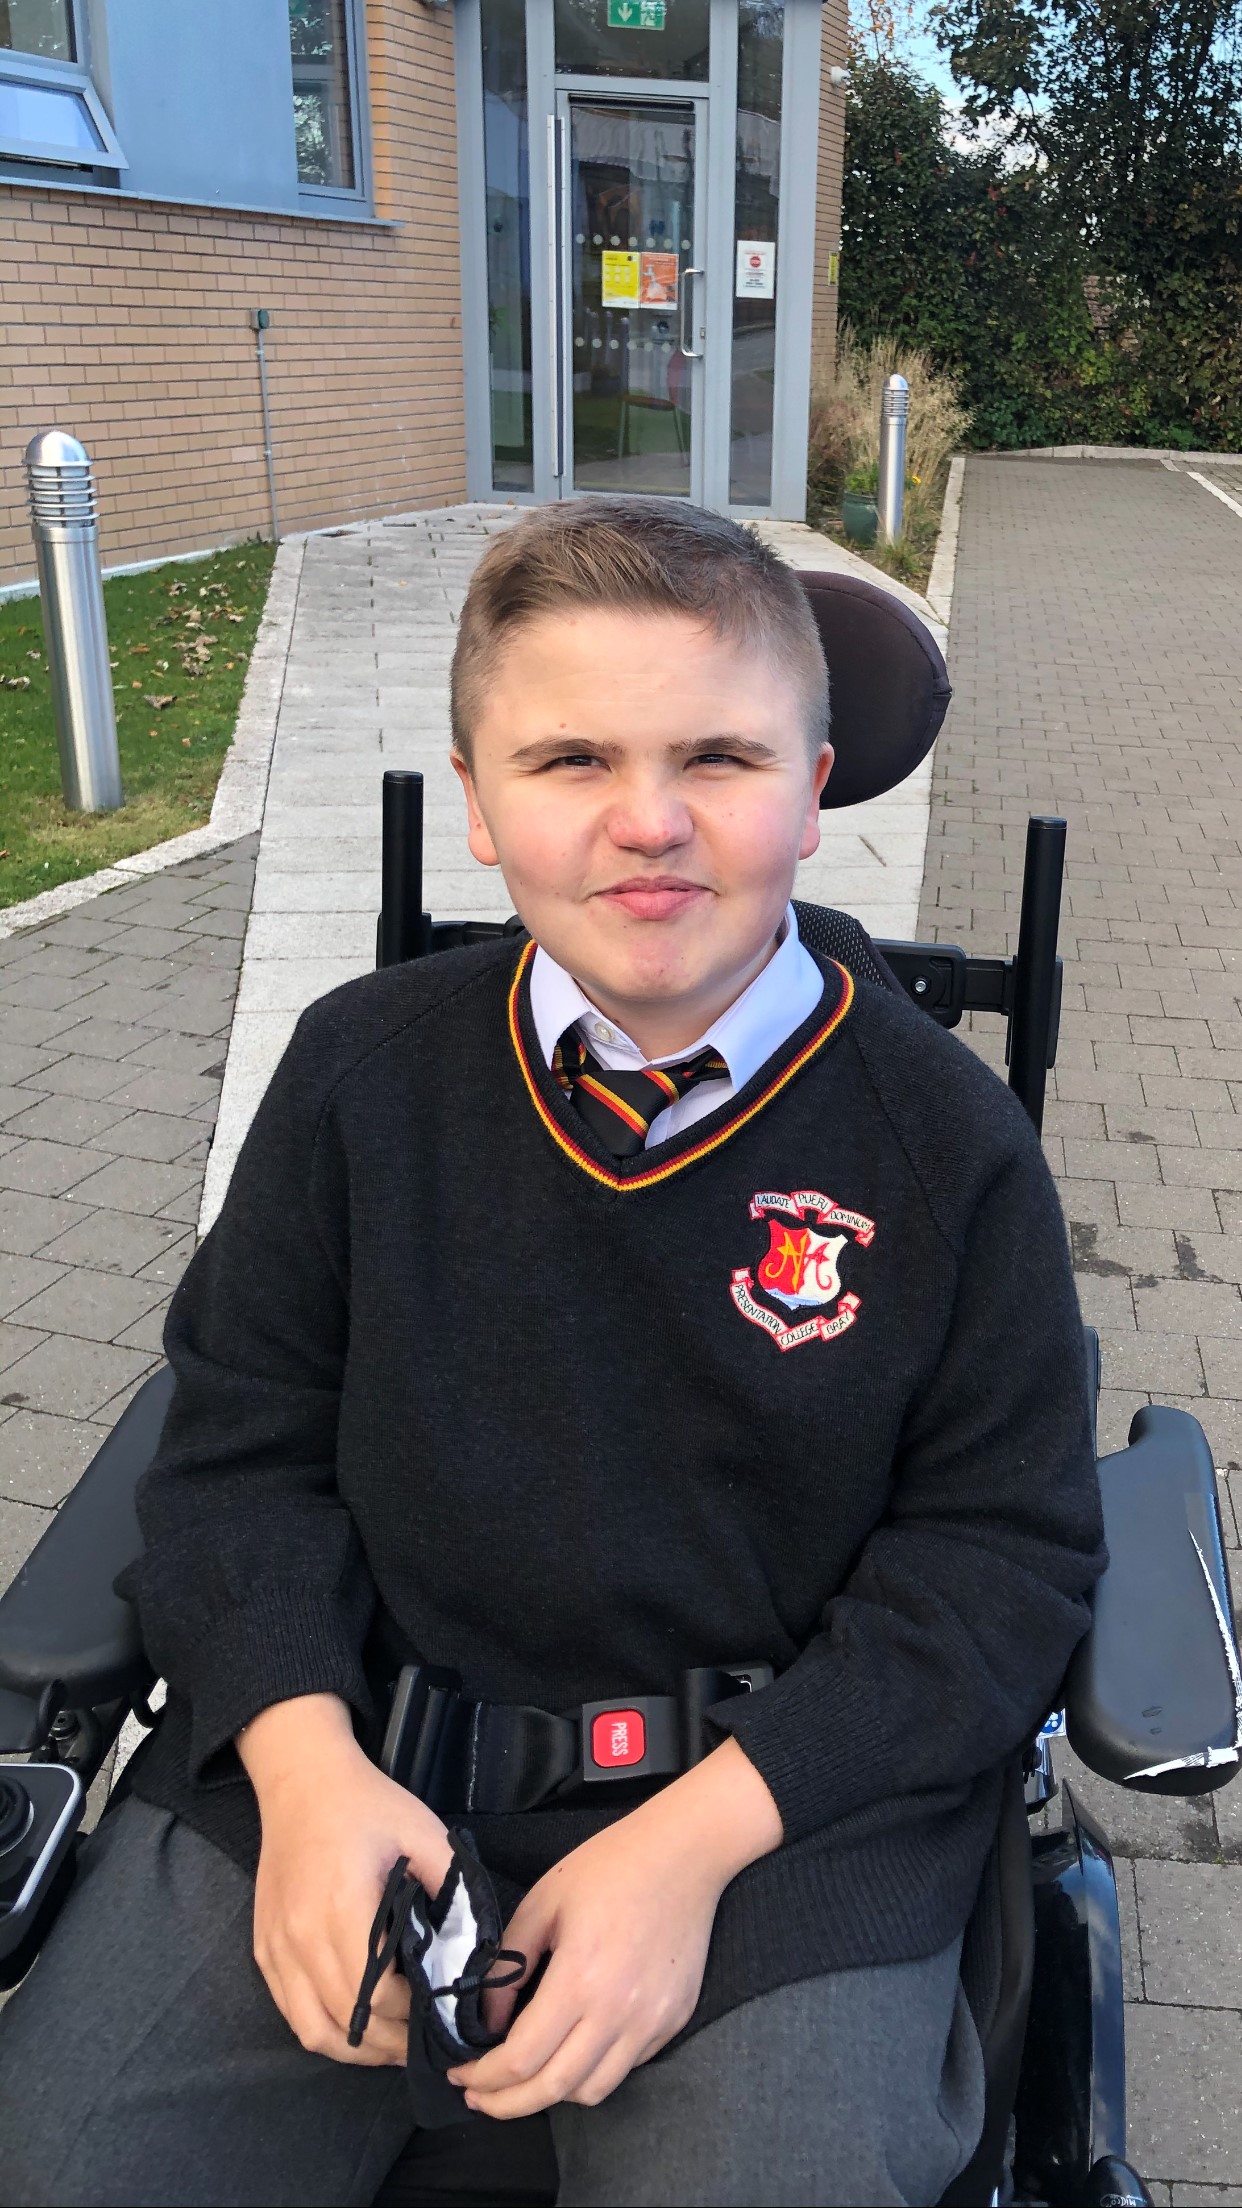 Boy wearing school uniform in wheelchair